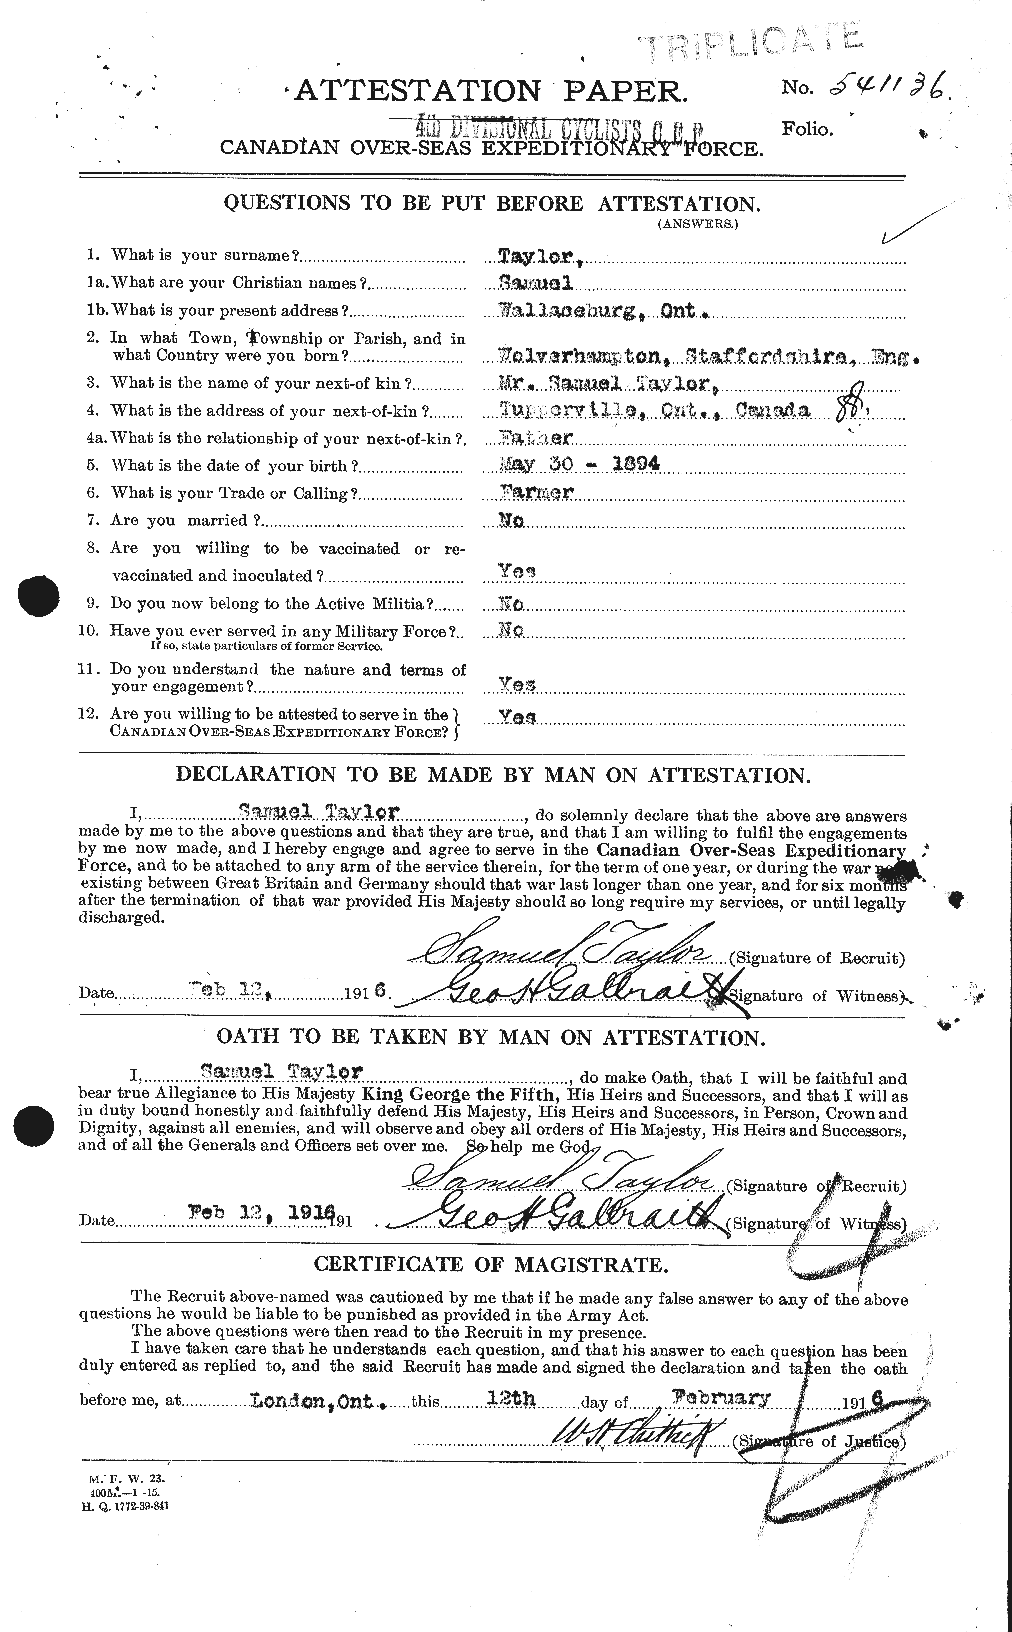 Dossiers du Personnel de la Première Guerre mondiale - CEC 627873a